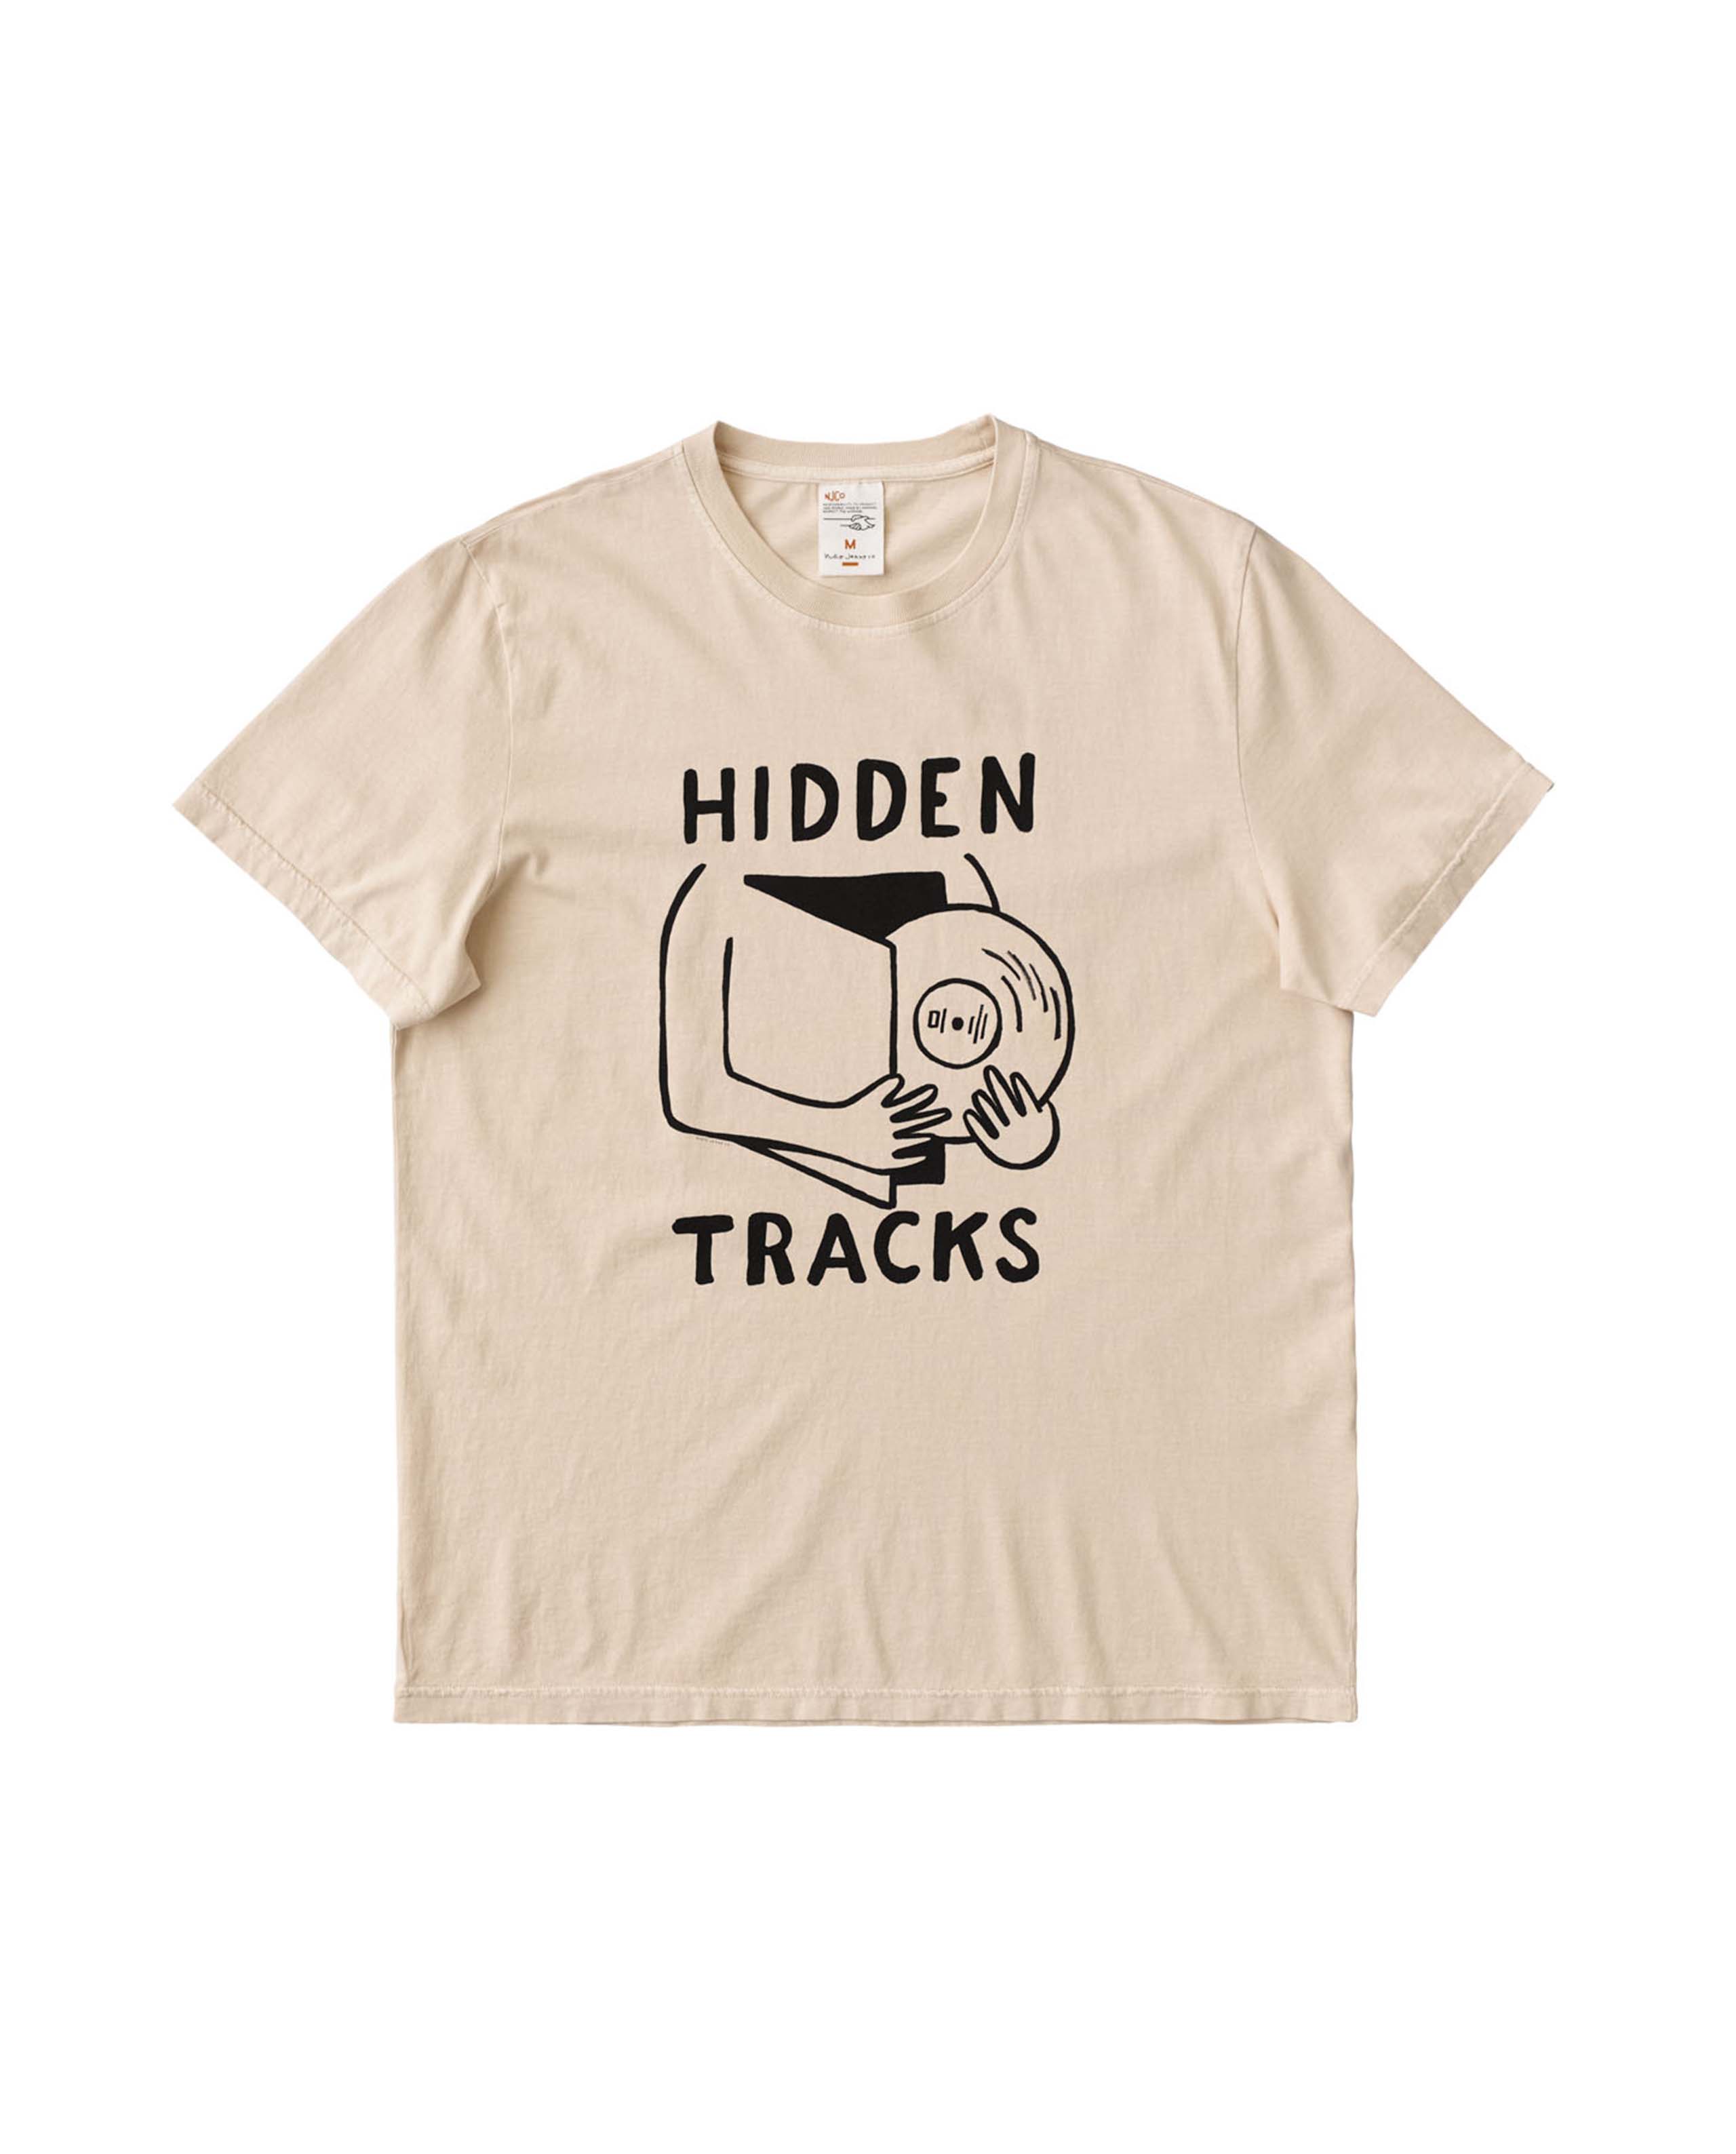 marché commun nudie jean homme t-shirt manches courtes coton biologique beige imprimé hidden tracks